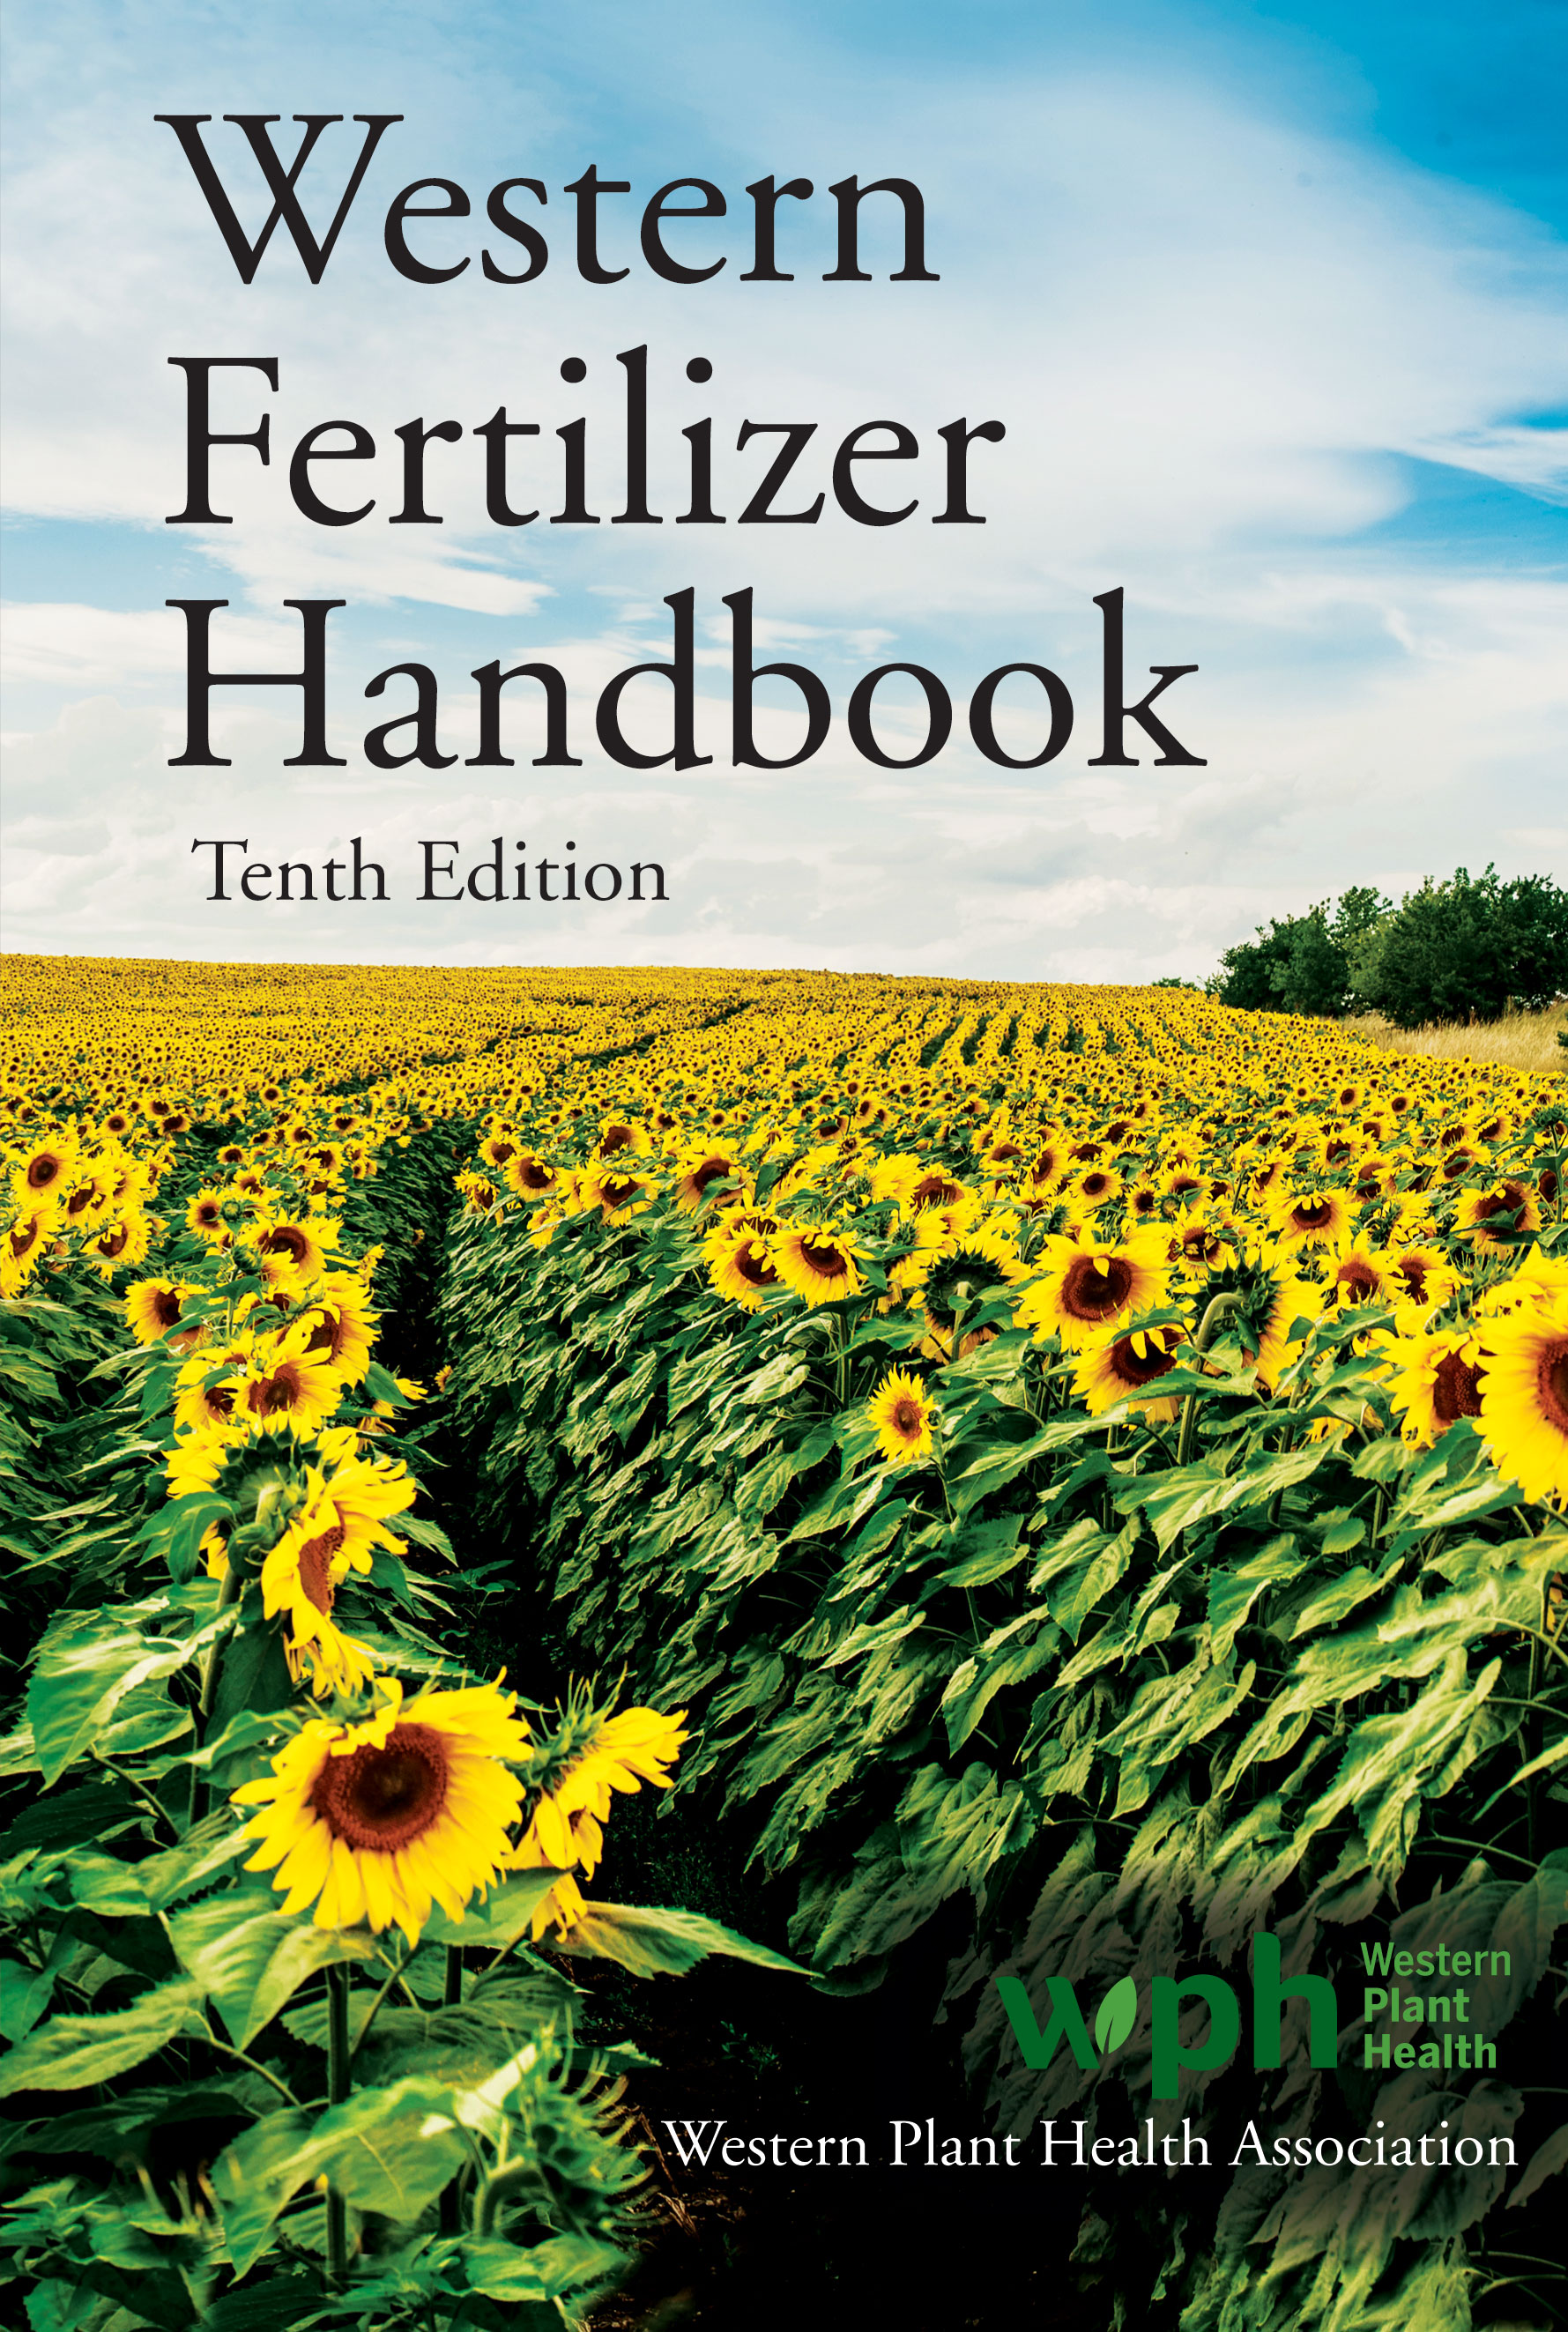 Western Fertilizer Handbook: Tenth Edition by   Western Plant Health Association